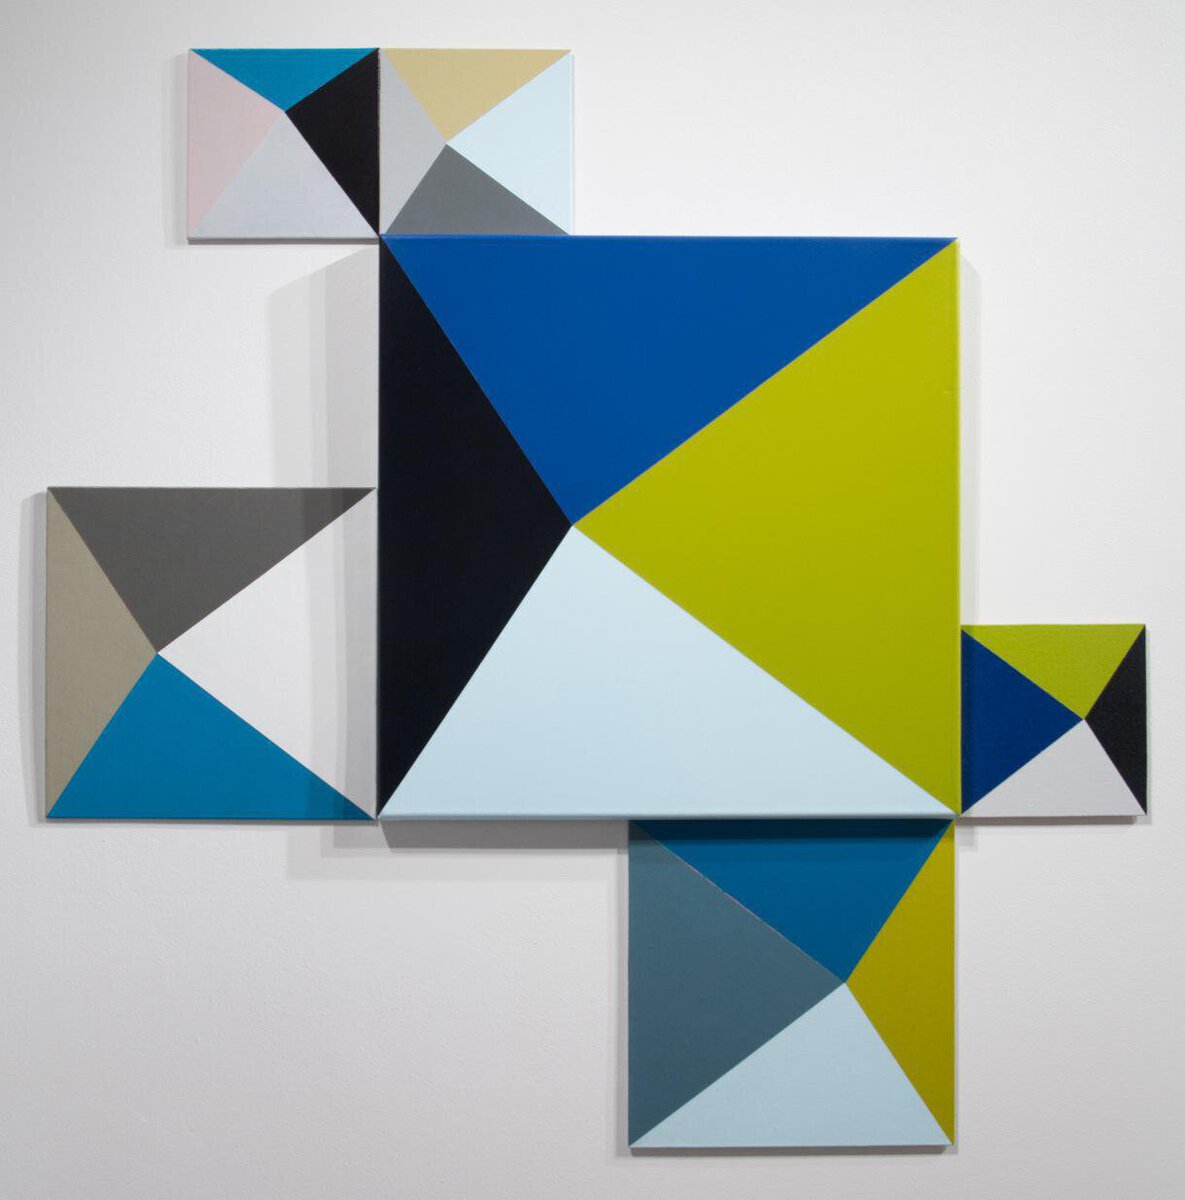 Natalia Cacchiarelli; Triangles; 2014